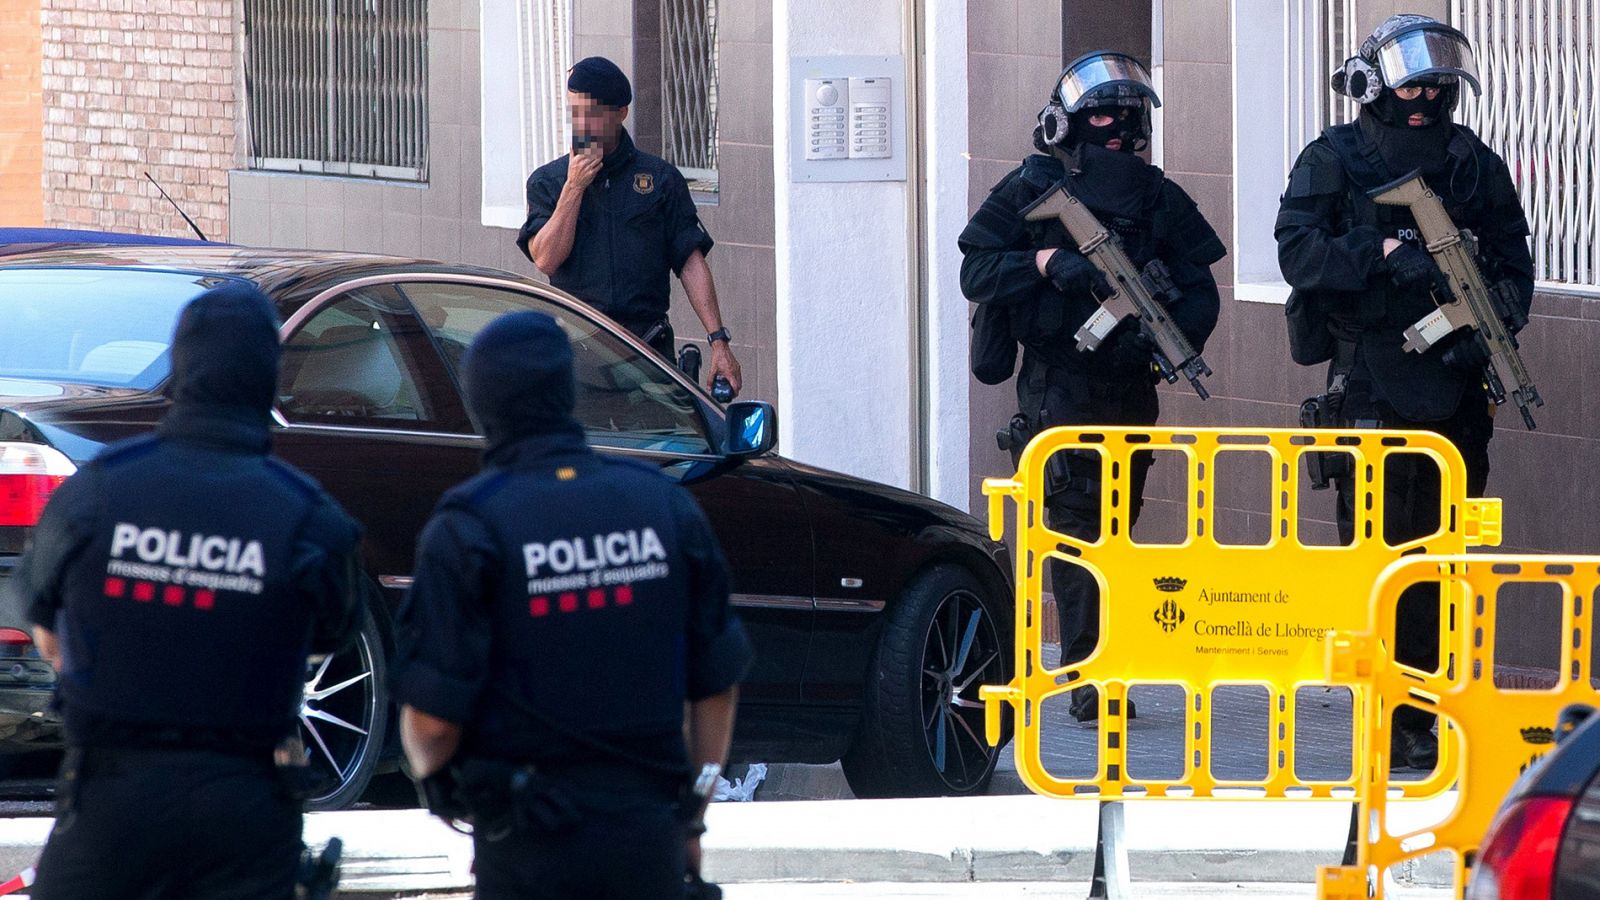 Los Mossos d'Esquadra tratan como un "atentado terrorista" el ataque en la comisaría de Cornellà de Llobregat (Barcelona), en el que un hombre ha sido abatido tras entrar armado con un cuchillo y abalanzarse contra una agente con una voluntad "claram